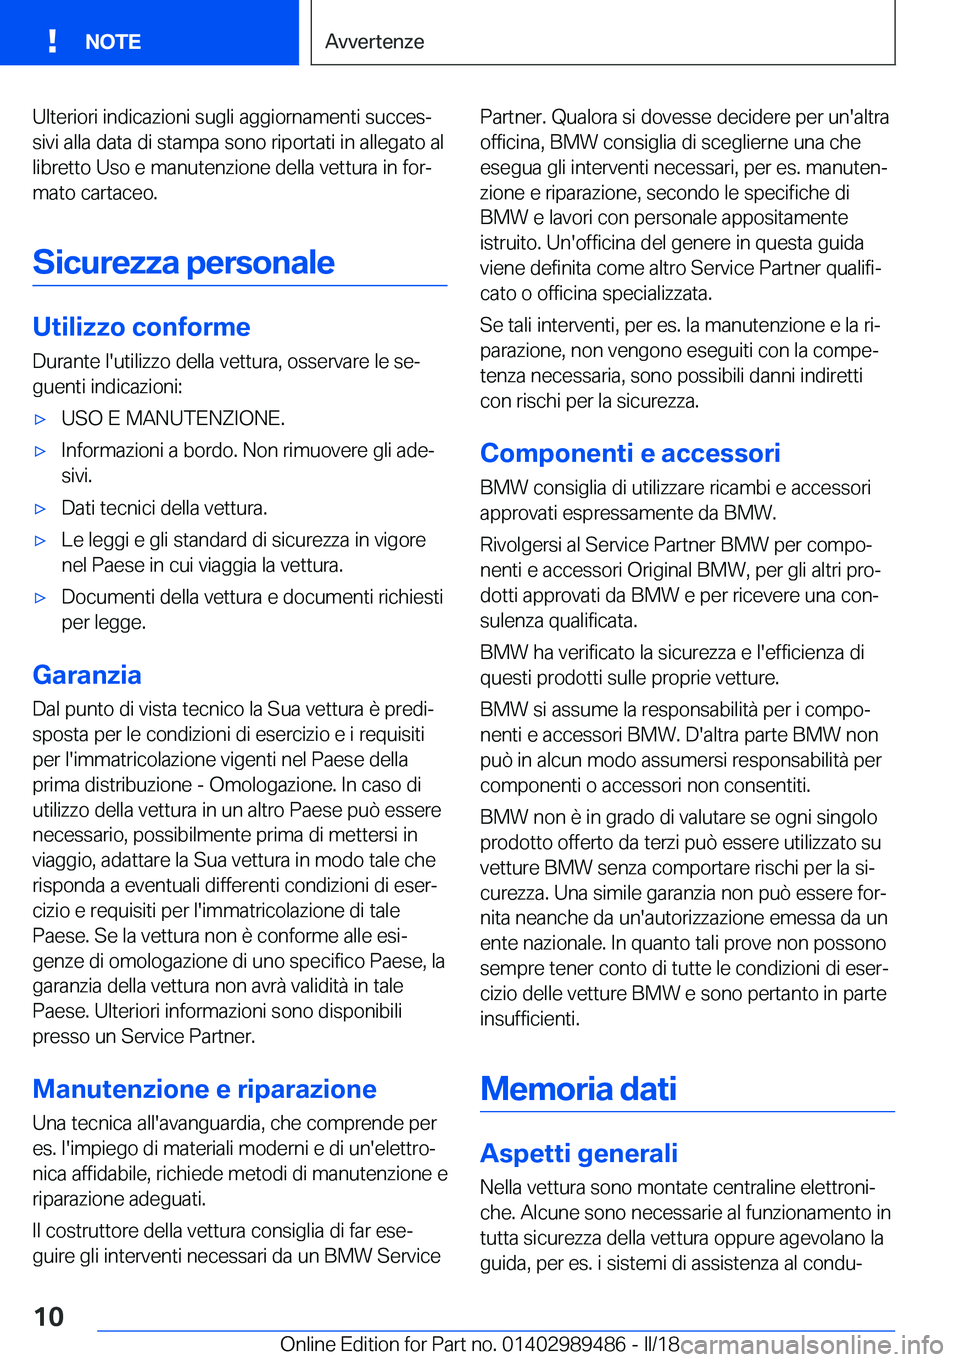 BMW M3 2018  Libretti Di Uso E manutenzione (in Italian) �U�l�t�e�r�i�o�r�i� �i�n�d�i�c�a�z�i�o�n�i� �s�u�g�l�i� �a�g�g�i�o�r�n�a�m�e�n�t�i� �s�u�c�c�e�sª
�s�i�v�i� �a�l�l�a� �d�a�t�a� �d�i� �s�t�a�m�p�a� �s�o�n�o� �r�i�p�o�r�t�a�t�i� �i�n� �a�l�l�e�g�a�t